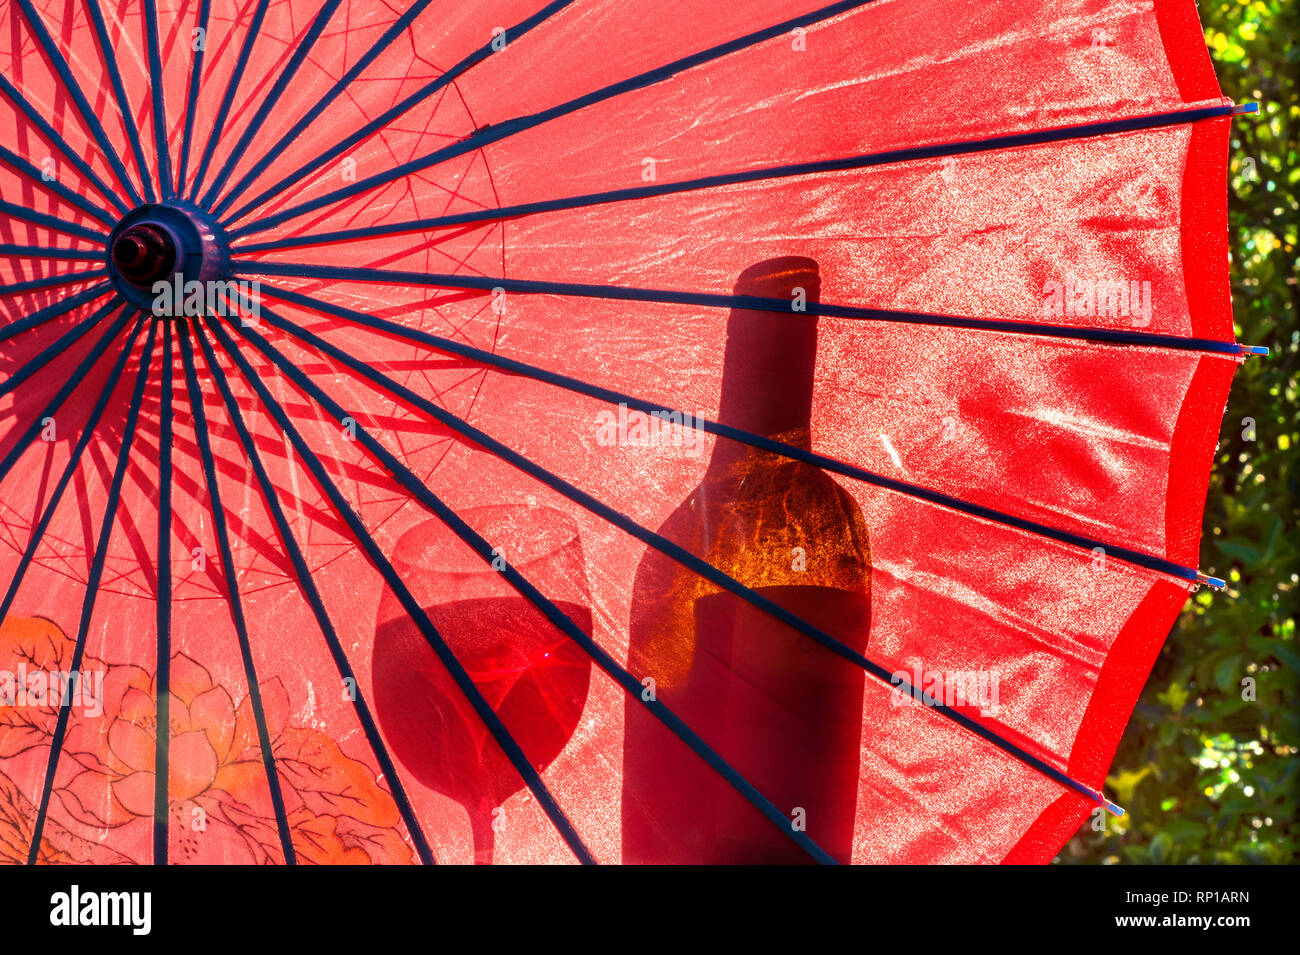 Im Freien Sommer Weinprobe Trinkpicknick mit rotem Sonnenschirm Sonnenschirm und Silhouette der Weinflasche und ein Glas Wein in Outdoor Sommerurlaub Sonne sonnige Lage Stockfoto